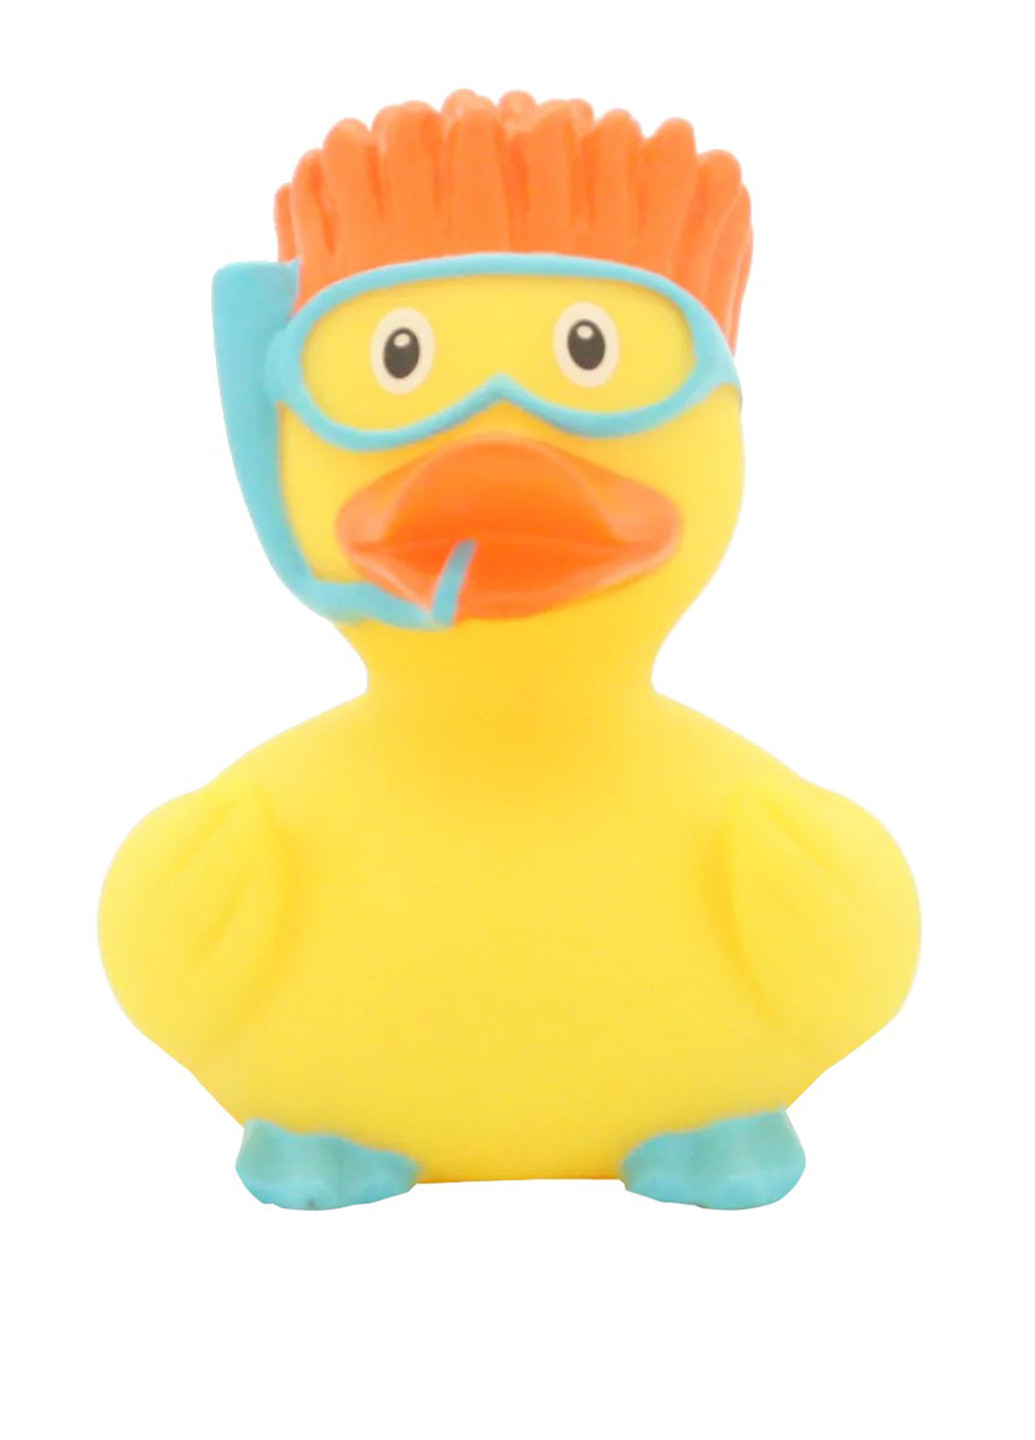 Іграшка для купання Качка Аквалангістка, 8,5x8,5x7,5 см Funny Ducks (250618796)